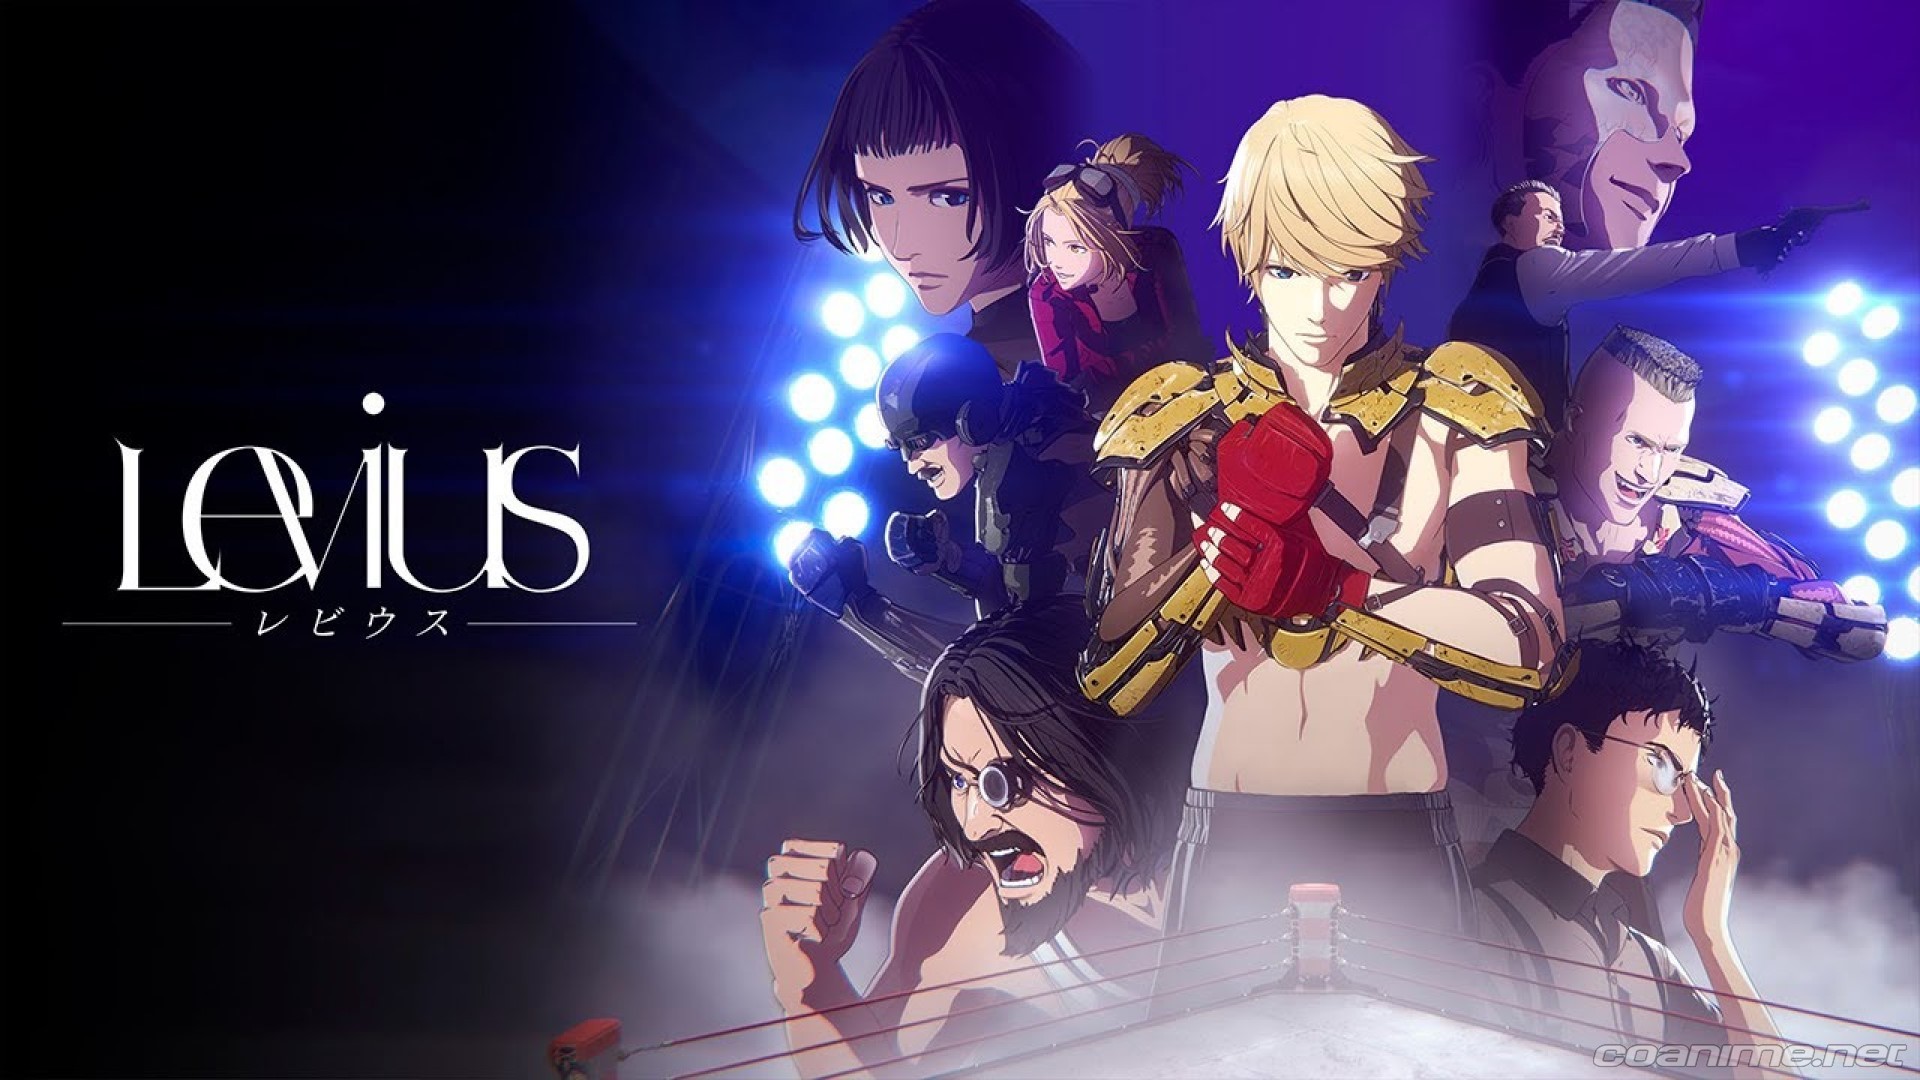 En Noviembre comenzara la Distribucion del Anime Levius